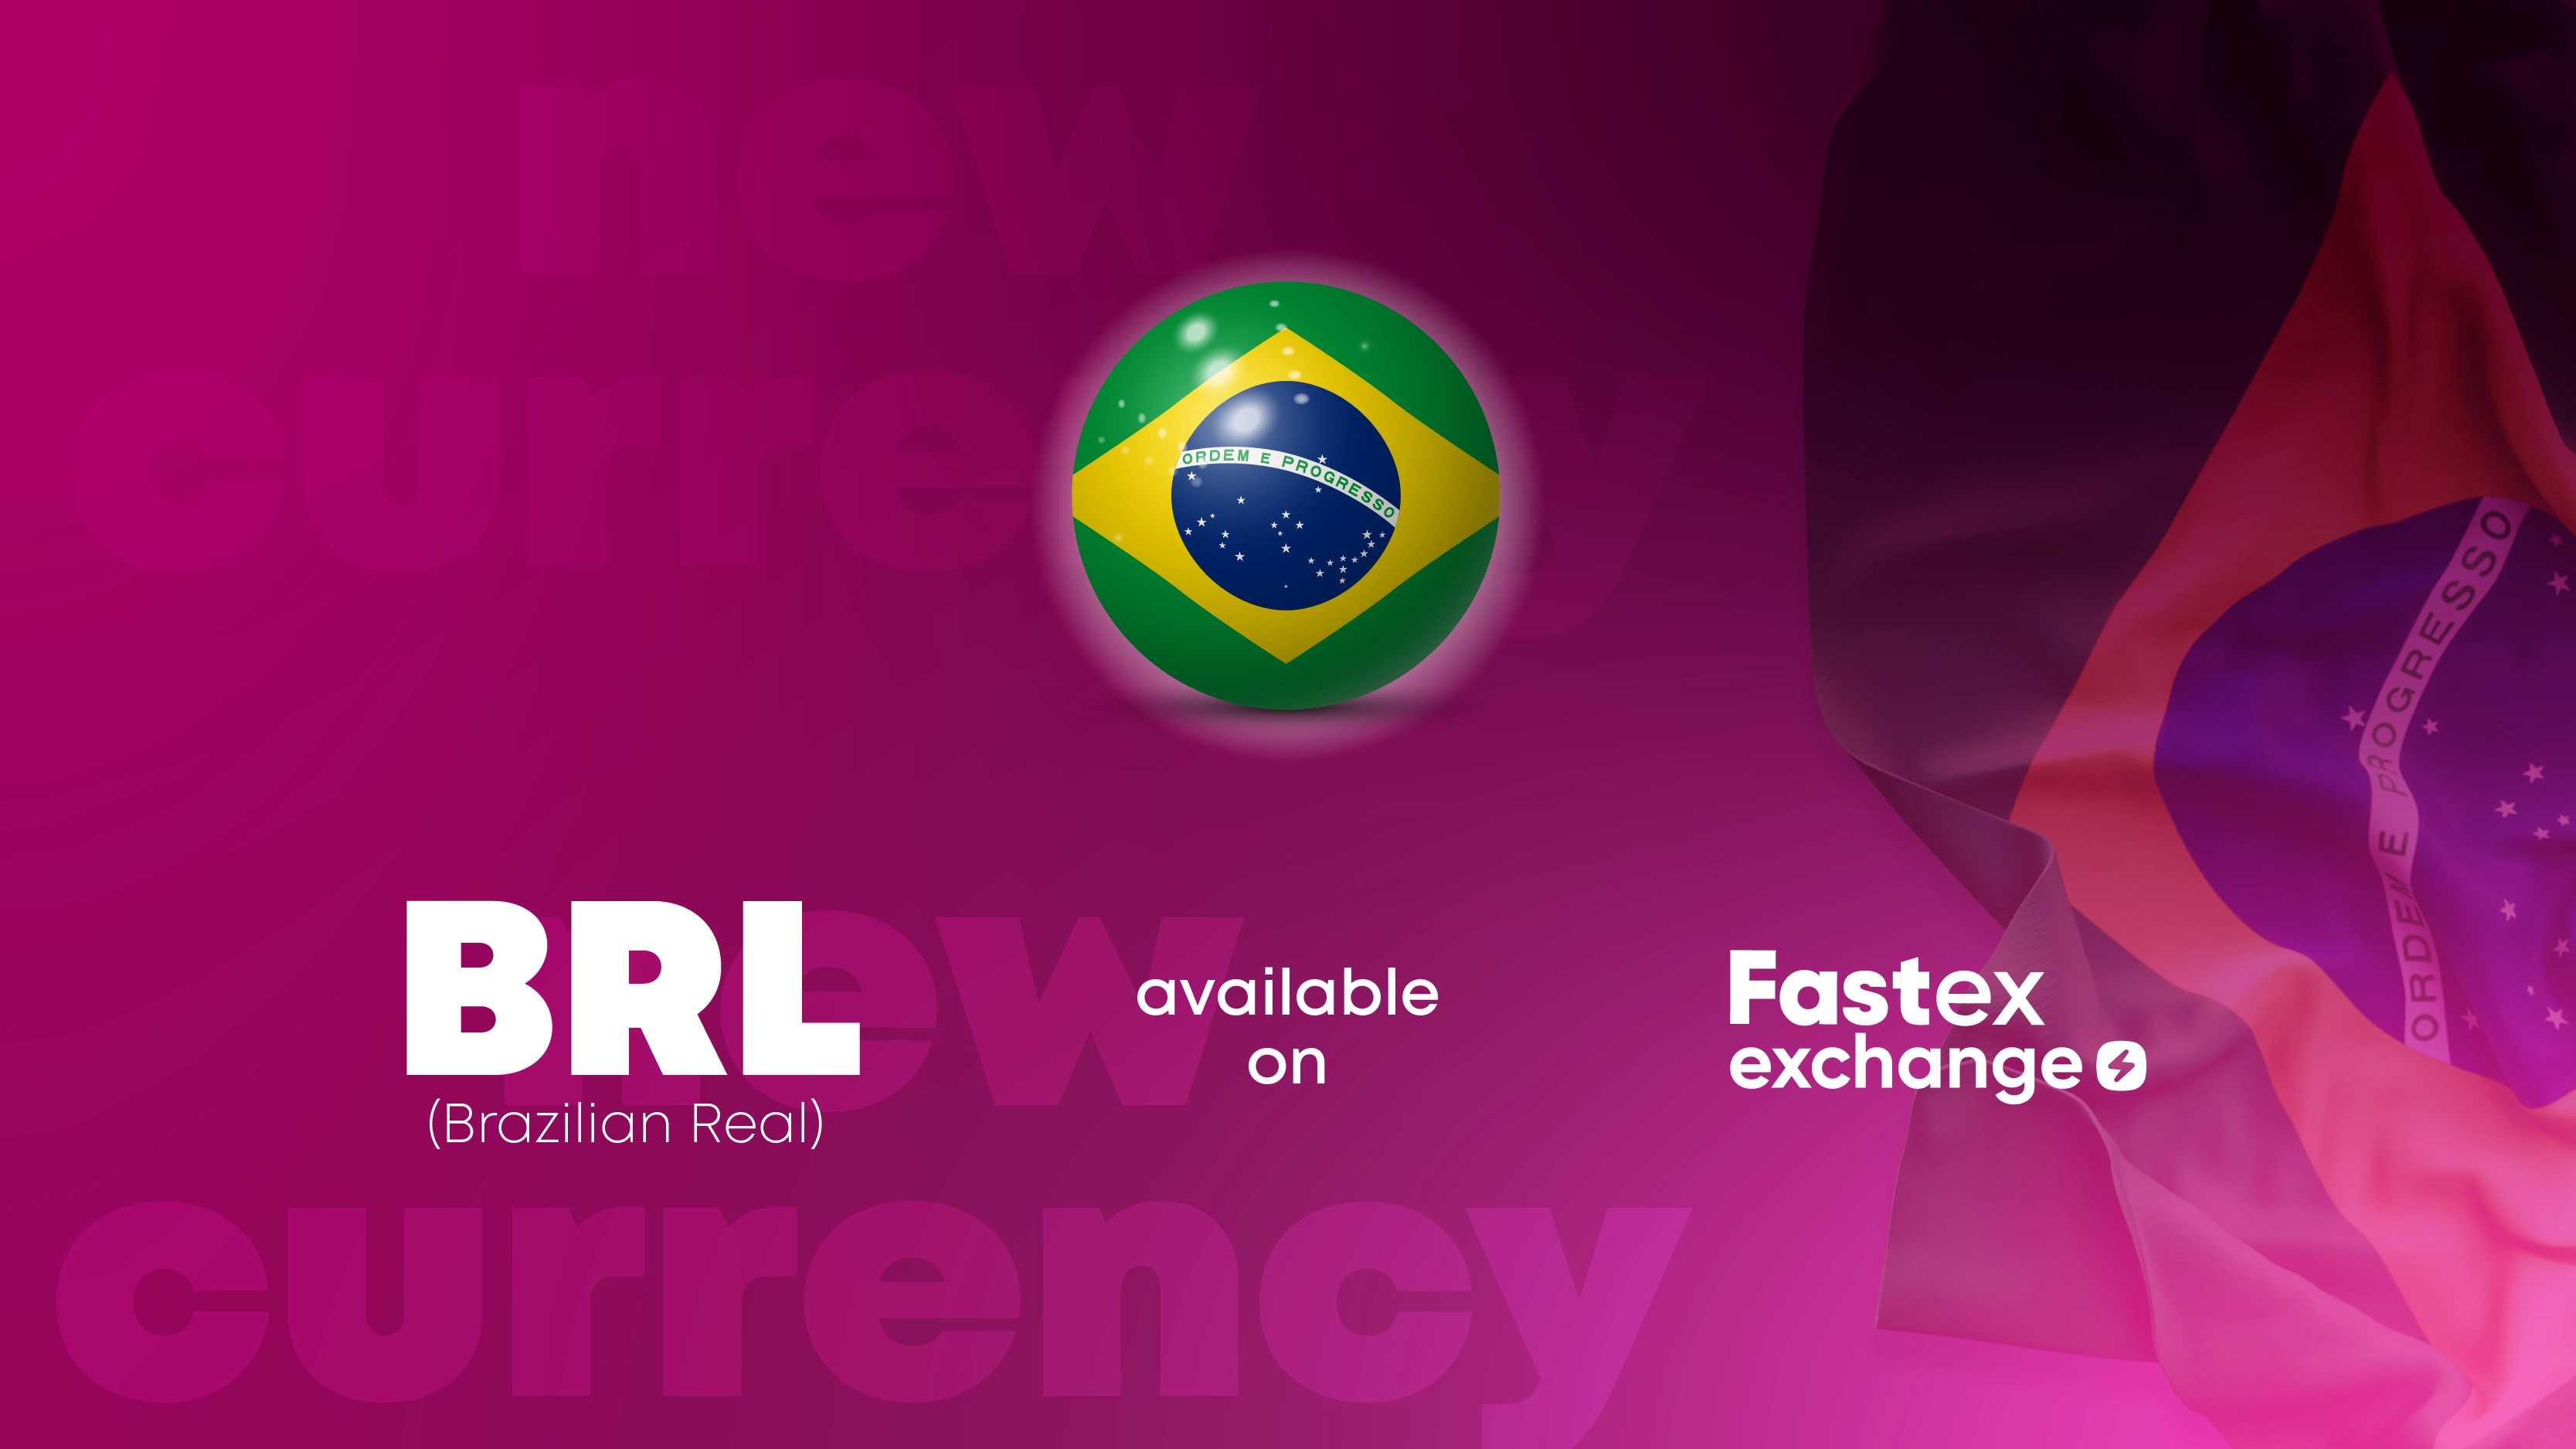 Fastex Intercambio integró la moneda oficial de Brasil.